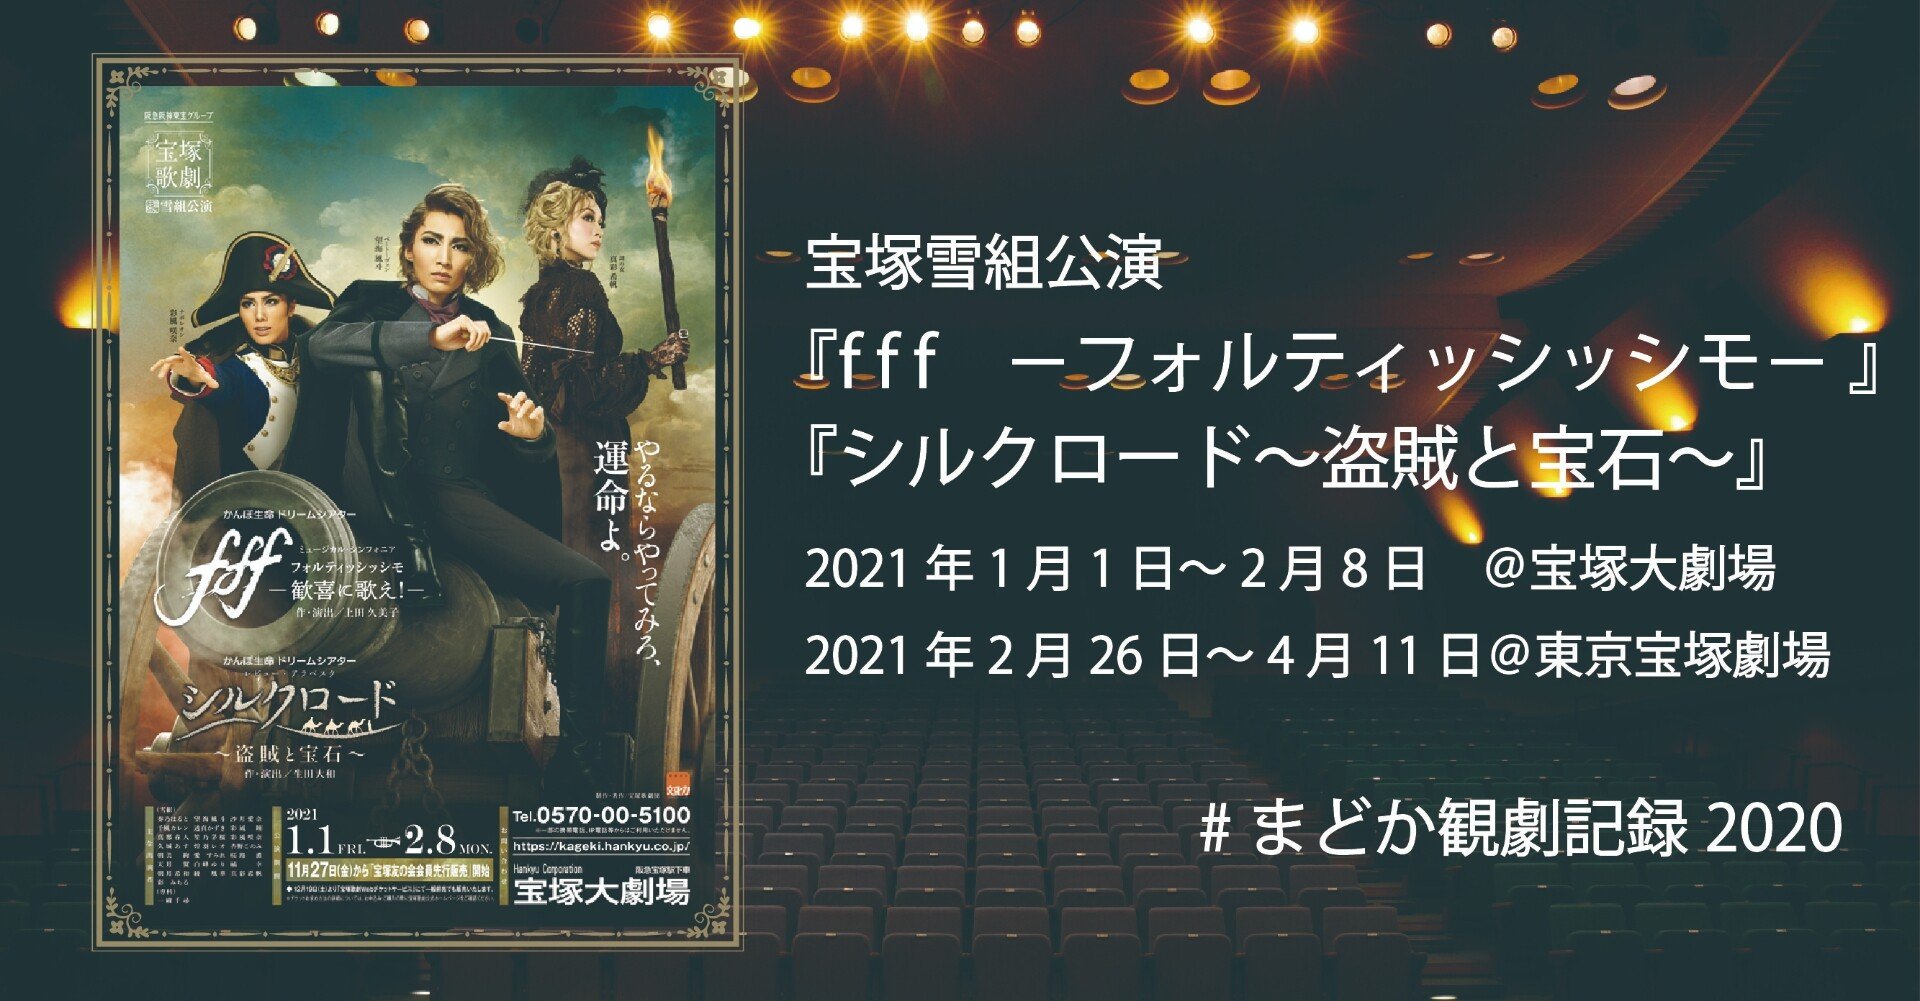 宝塚 雪組 望海風斗 DVD fff シルクロード - お笑い/バラエティ